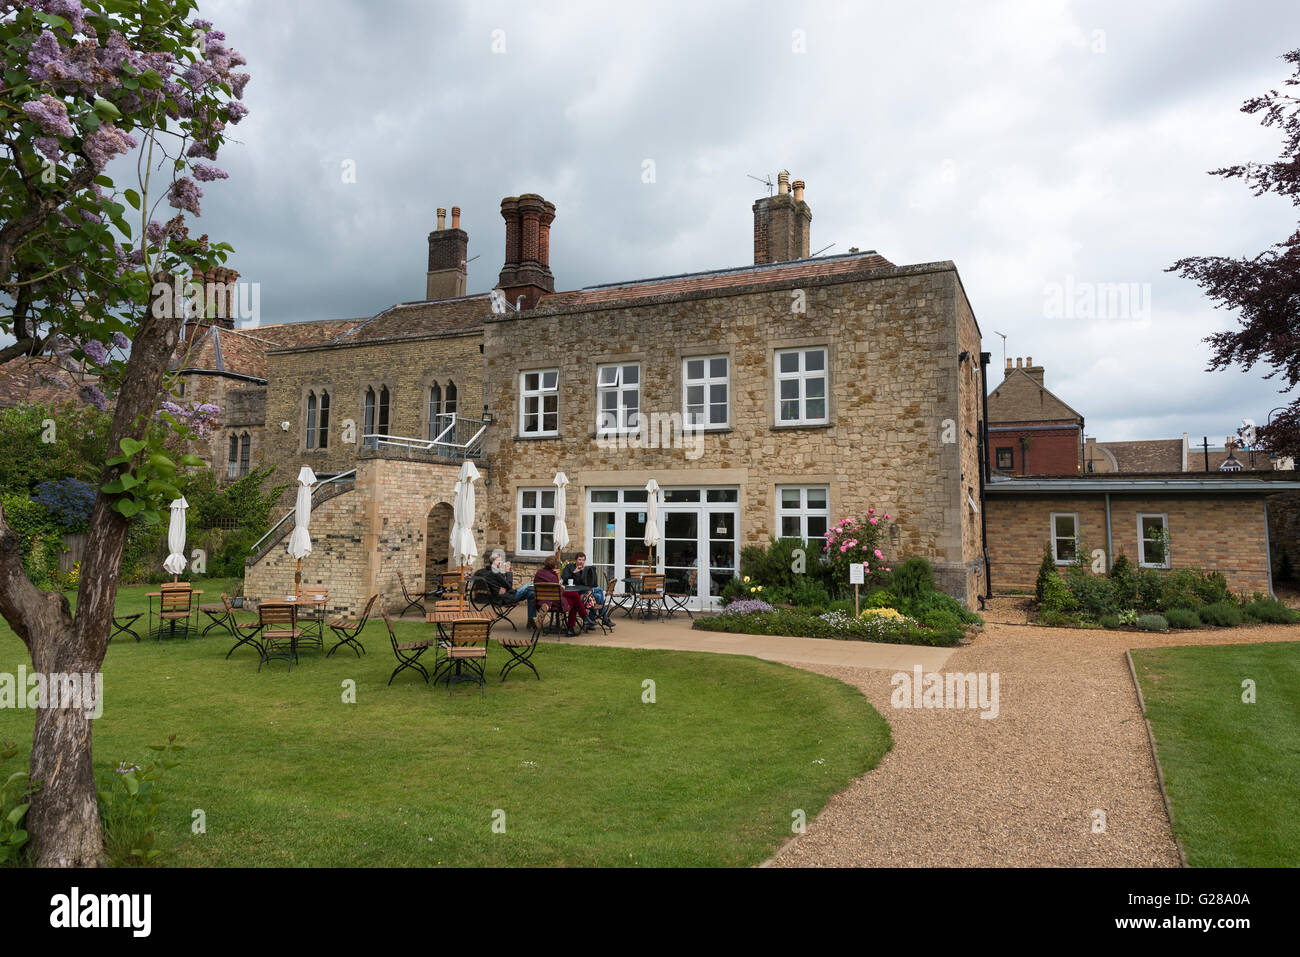 Almonry restaurant et salons de thé tea garden Ely Cambridgeshire England UK Banque D'Images